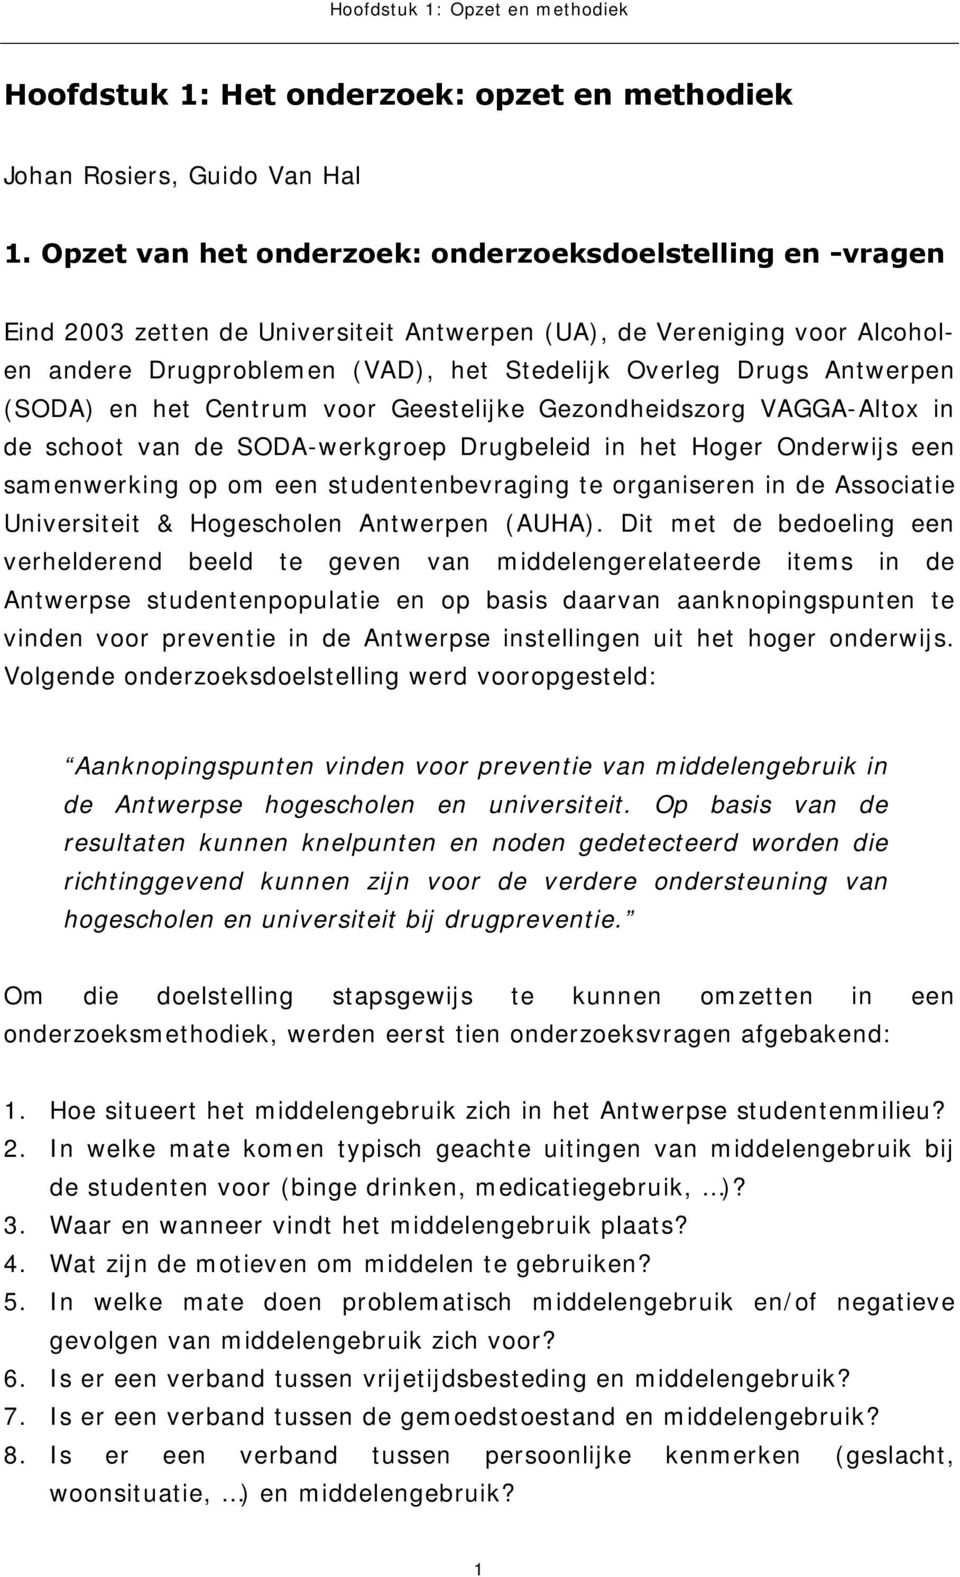 Antwerpen (SODA) en het Centrum voor Geestelijke Gezondheidszorg VAGGA-Altox in de schoot van de SODA-werkgroep Drugbeleid in het Hoger Onderwijs een samenwerking op om een studentenbevraging te